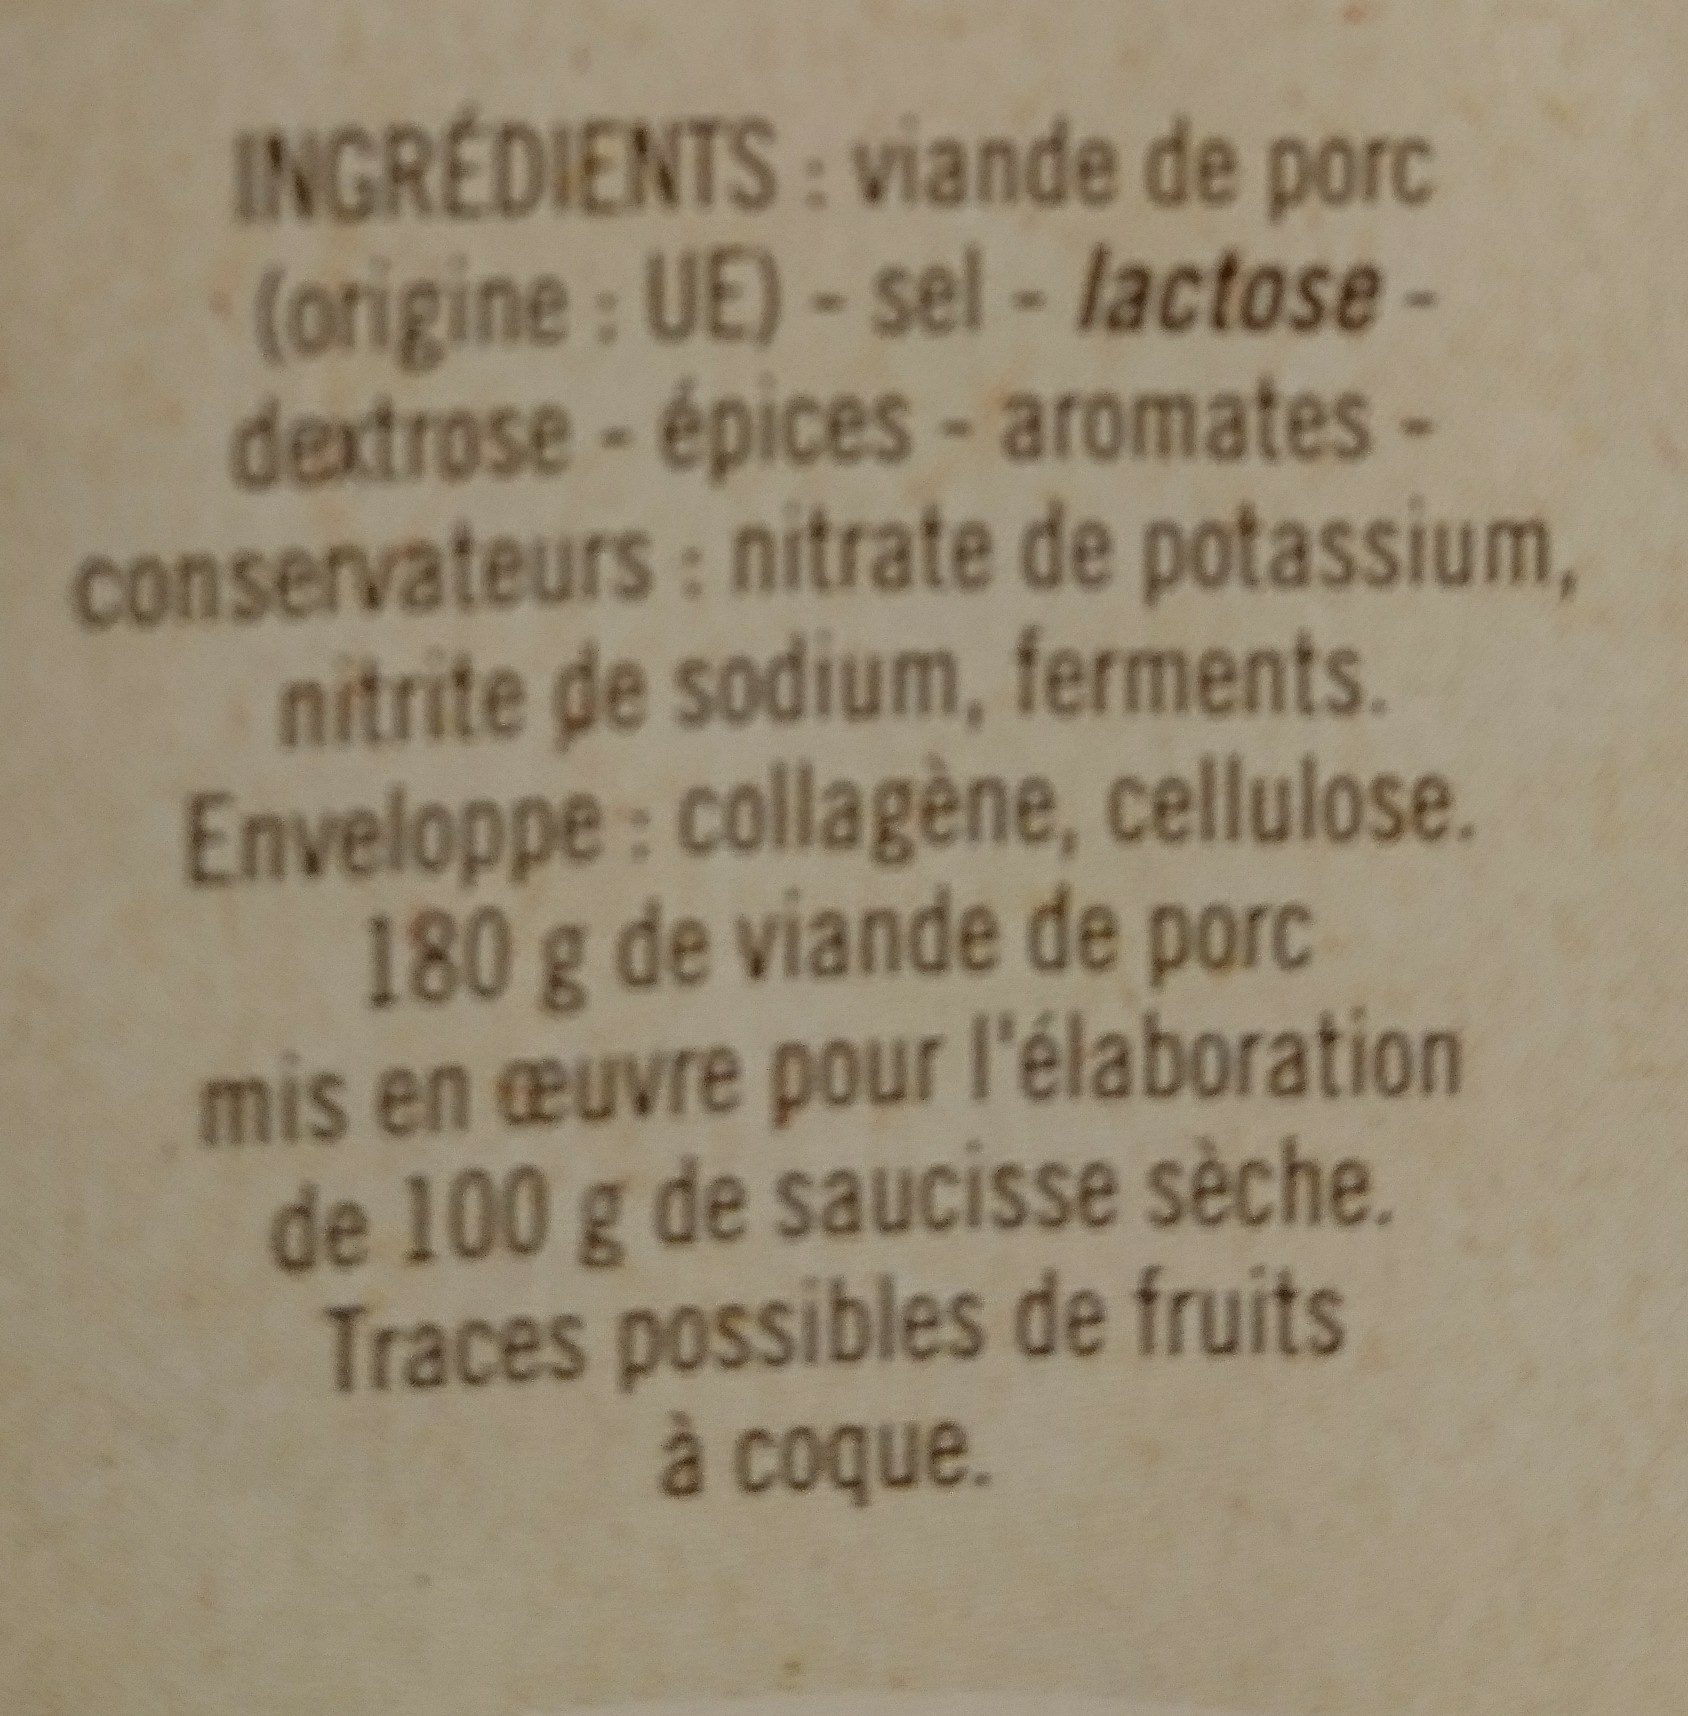 Les badinettes - Ingredients - fr